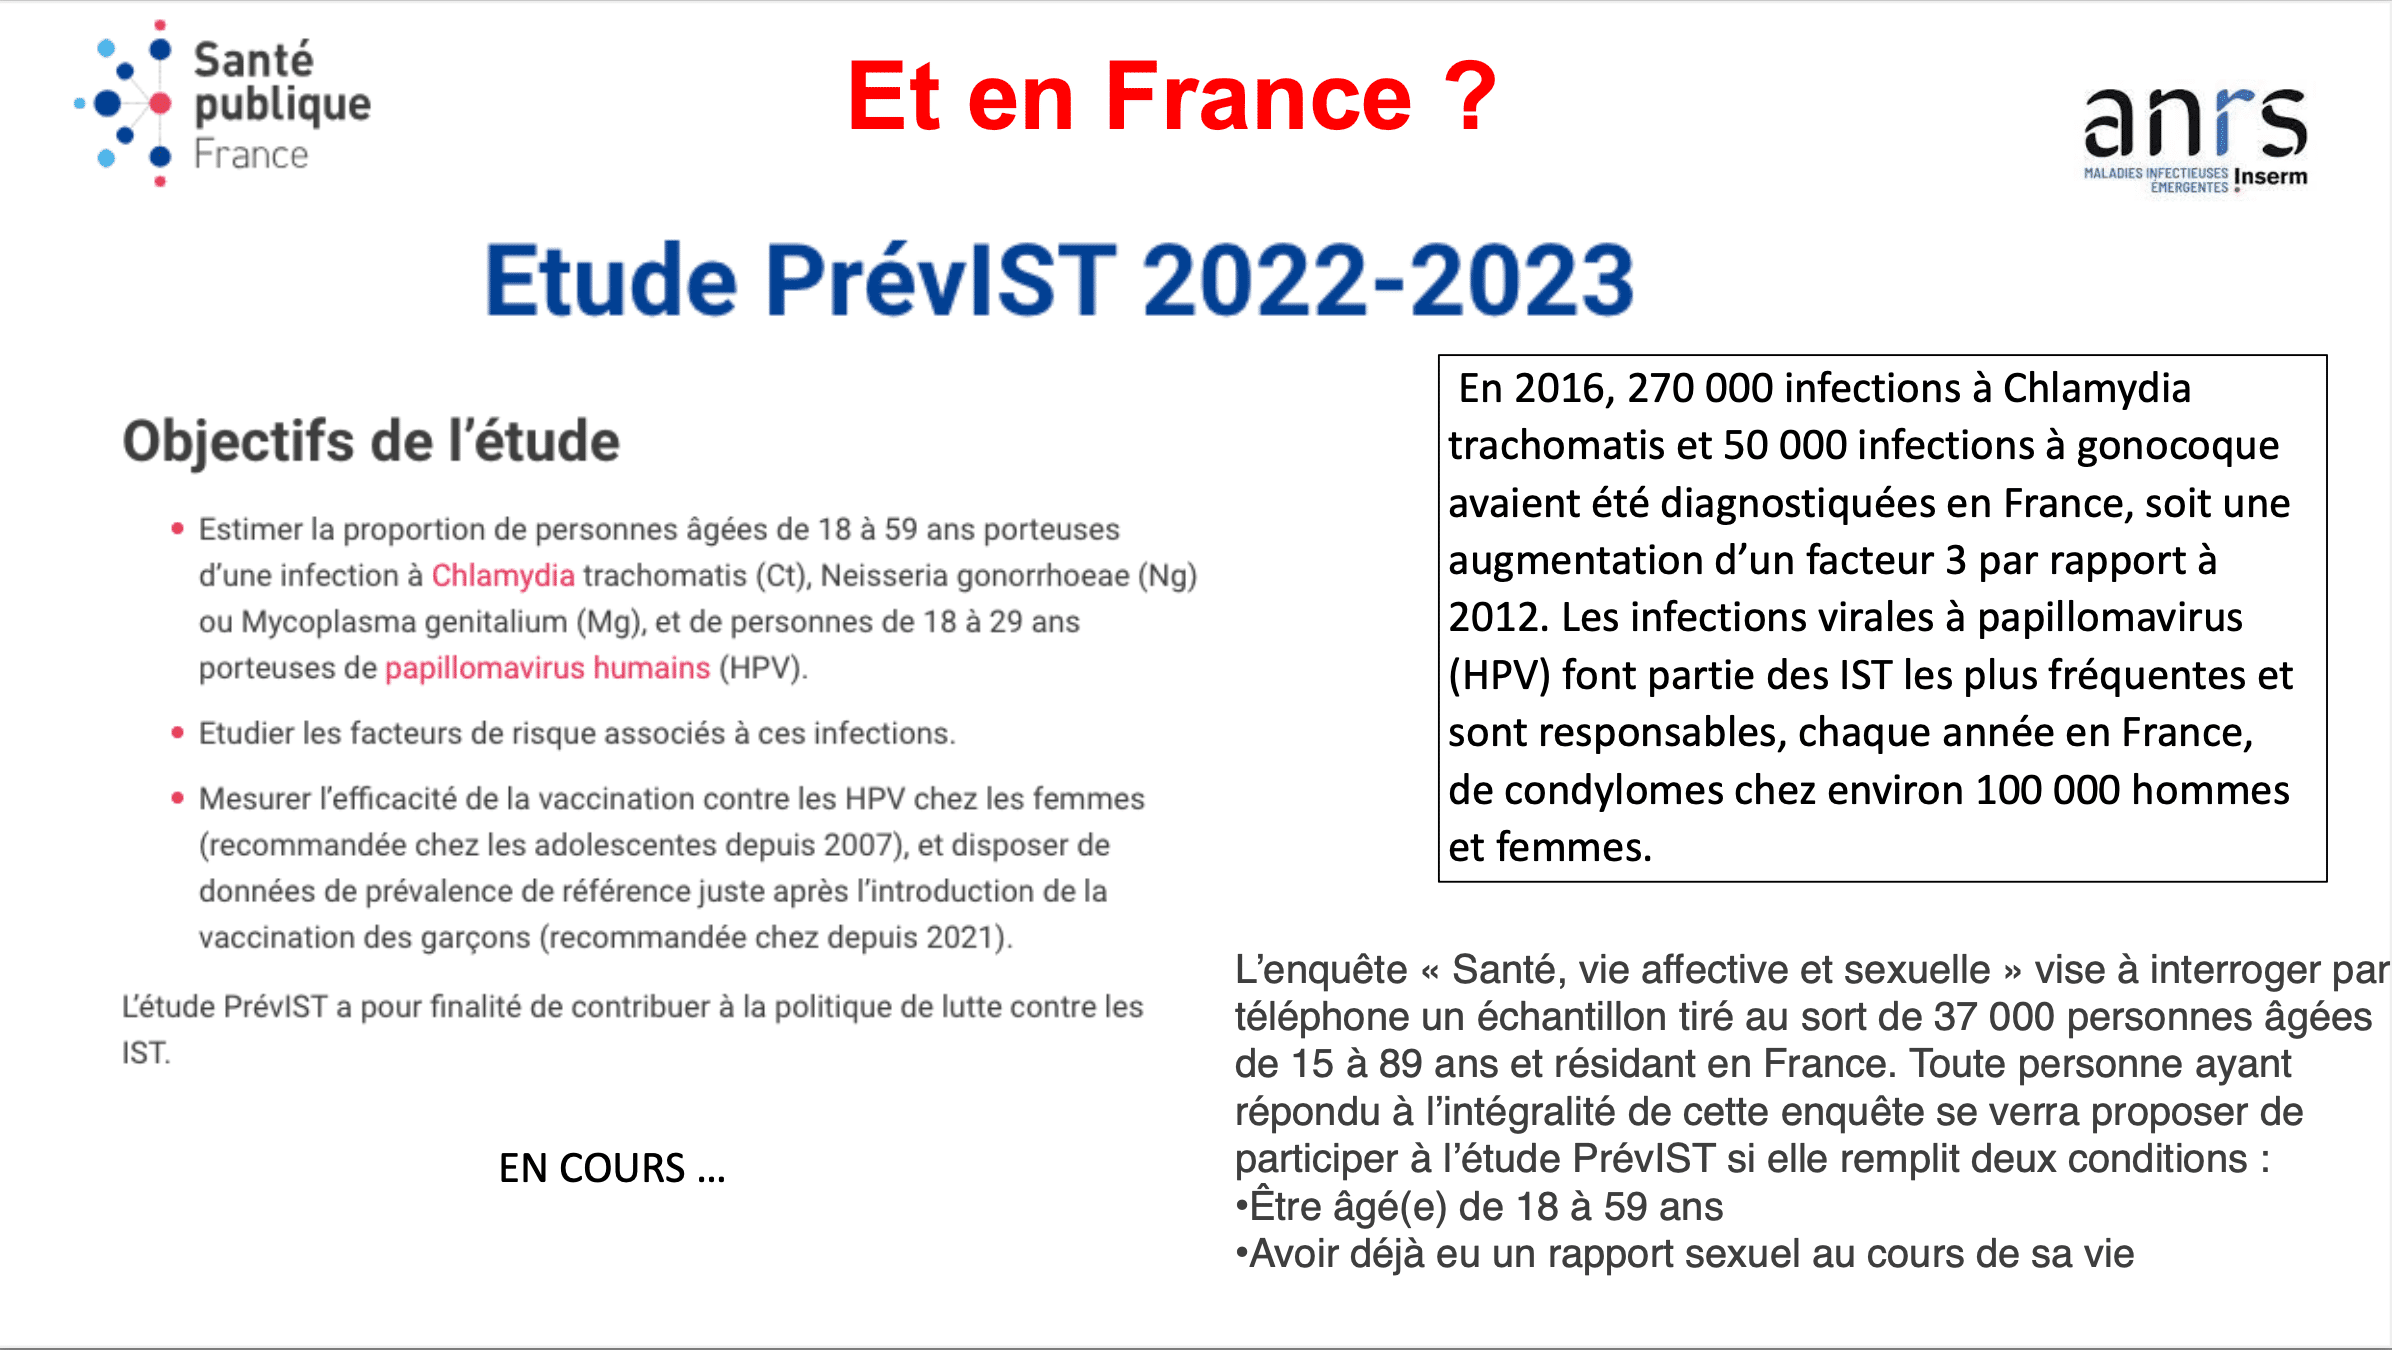 Etude PrévIST 2022-2023. Source: Santé publique France, ANRS-MIE.